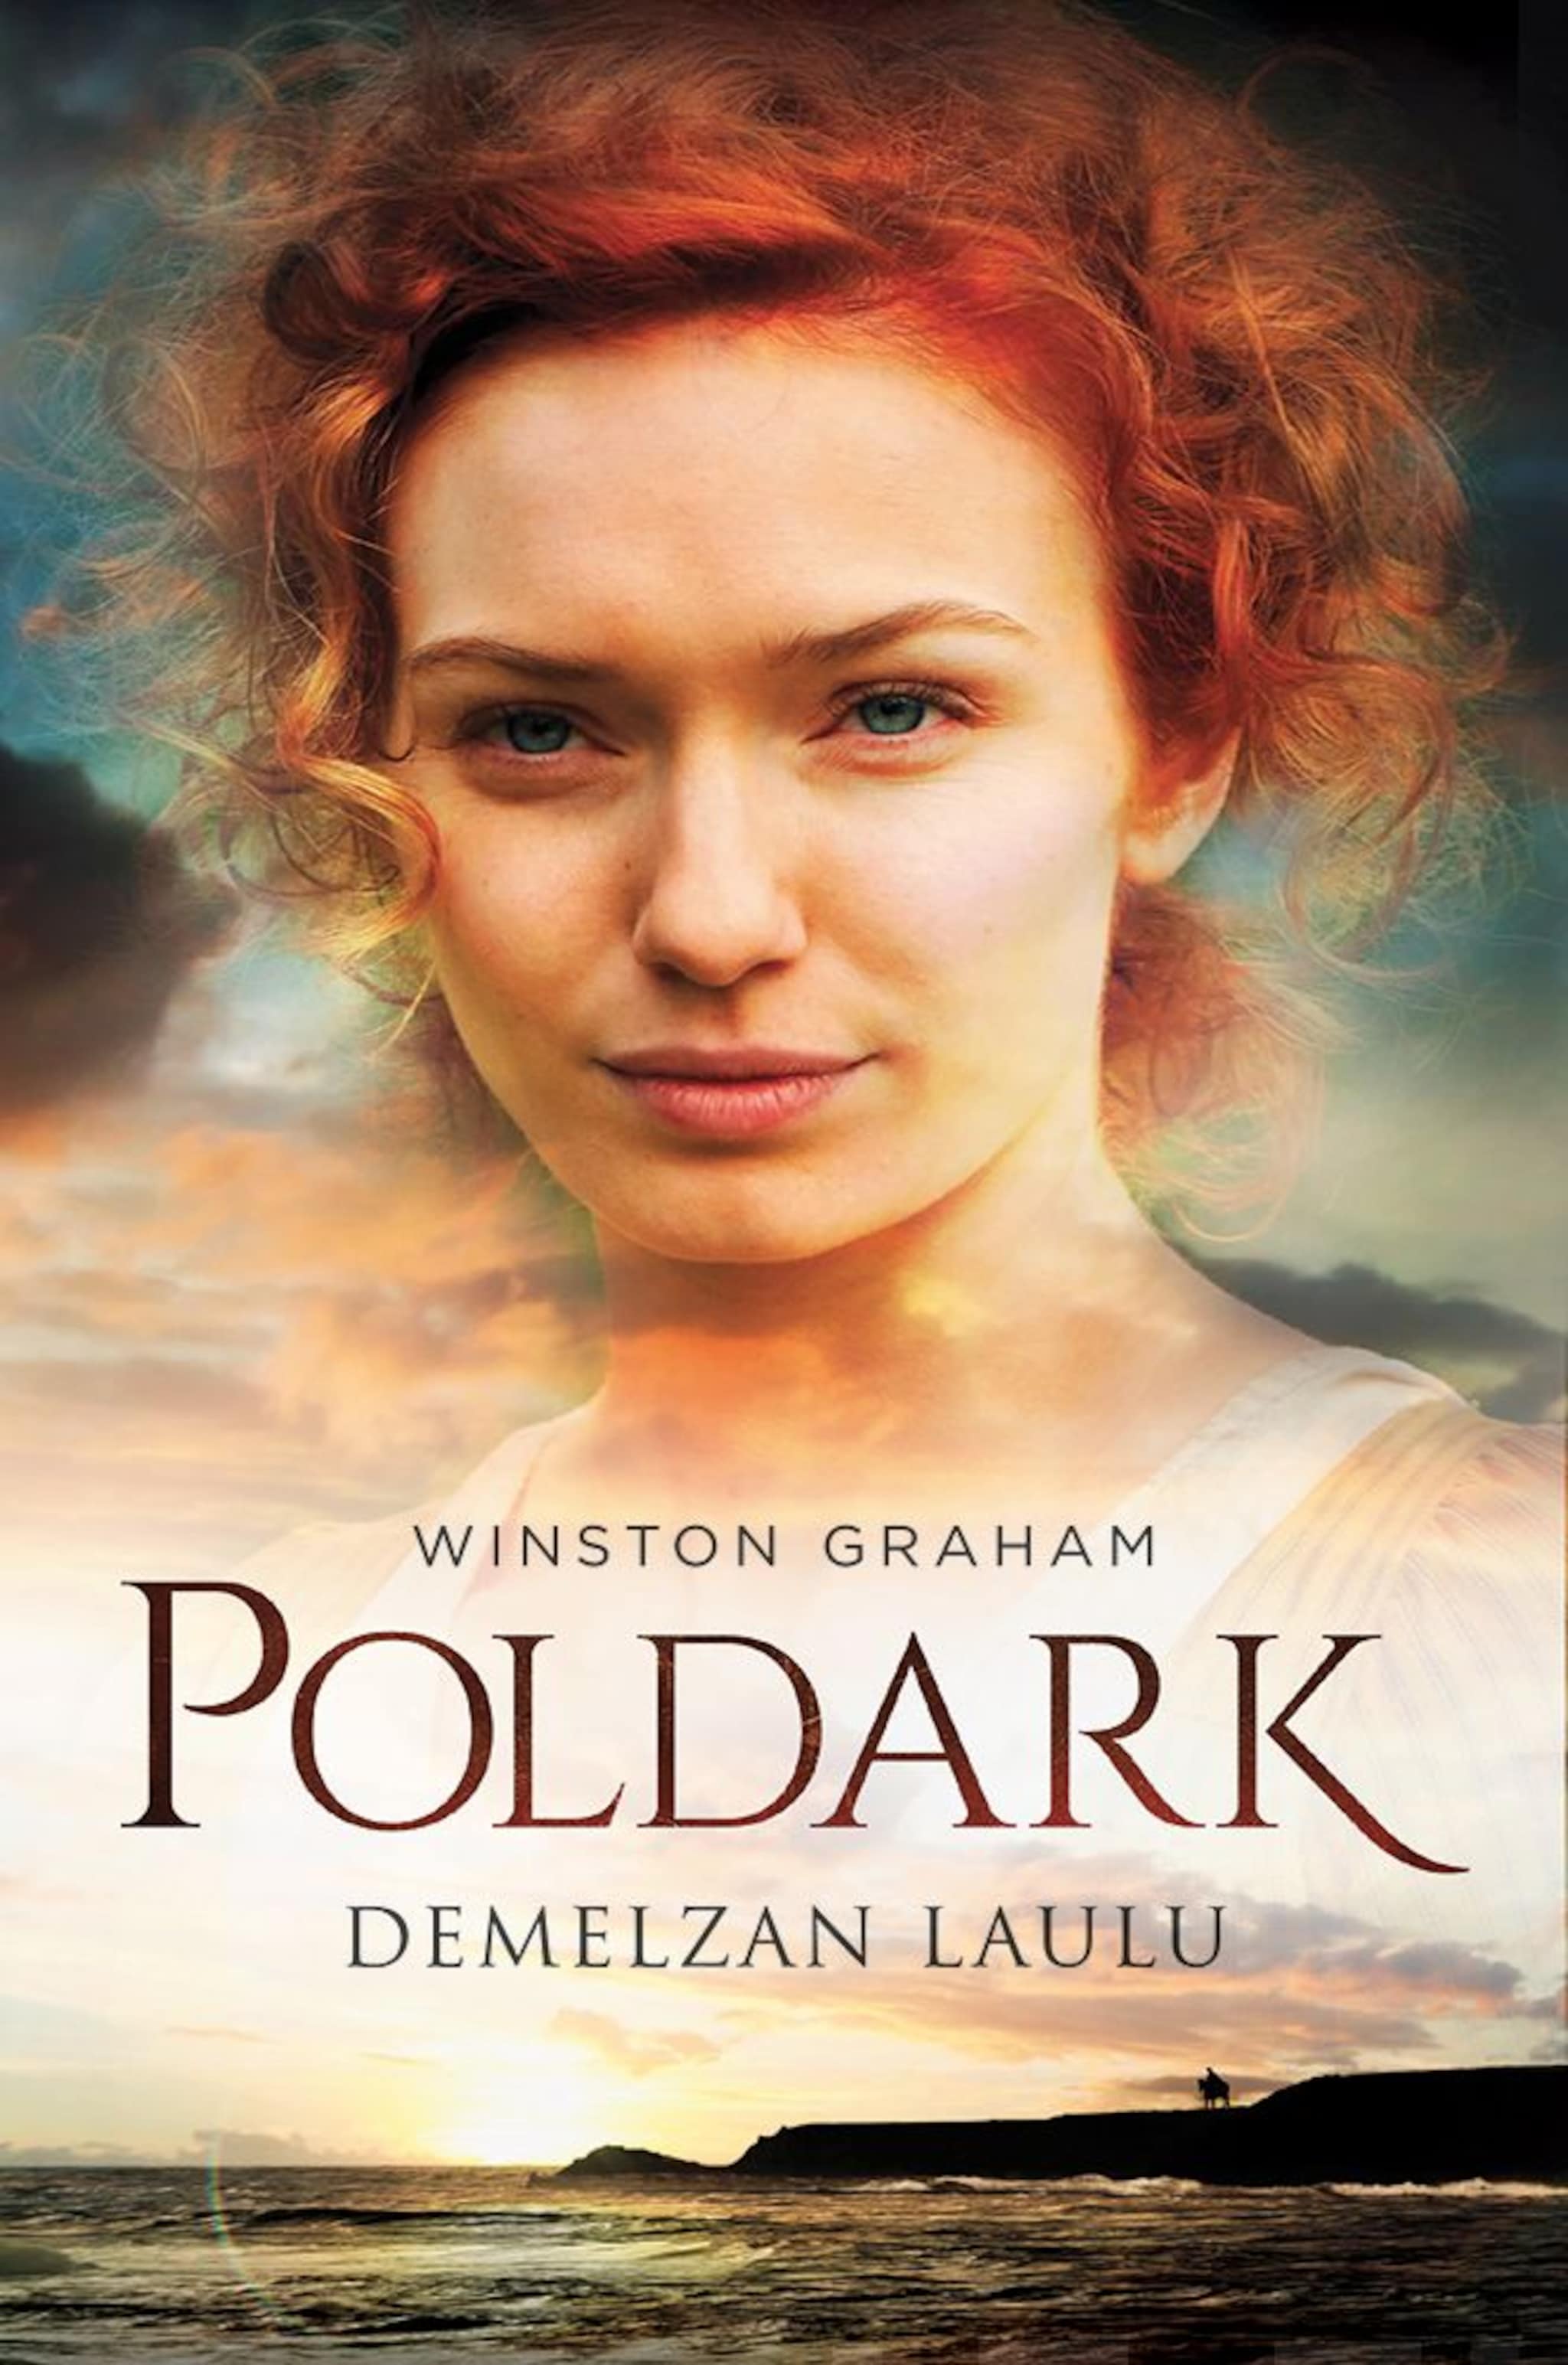 Poldark,Demelzan laulu ilmaiseksi